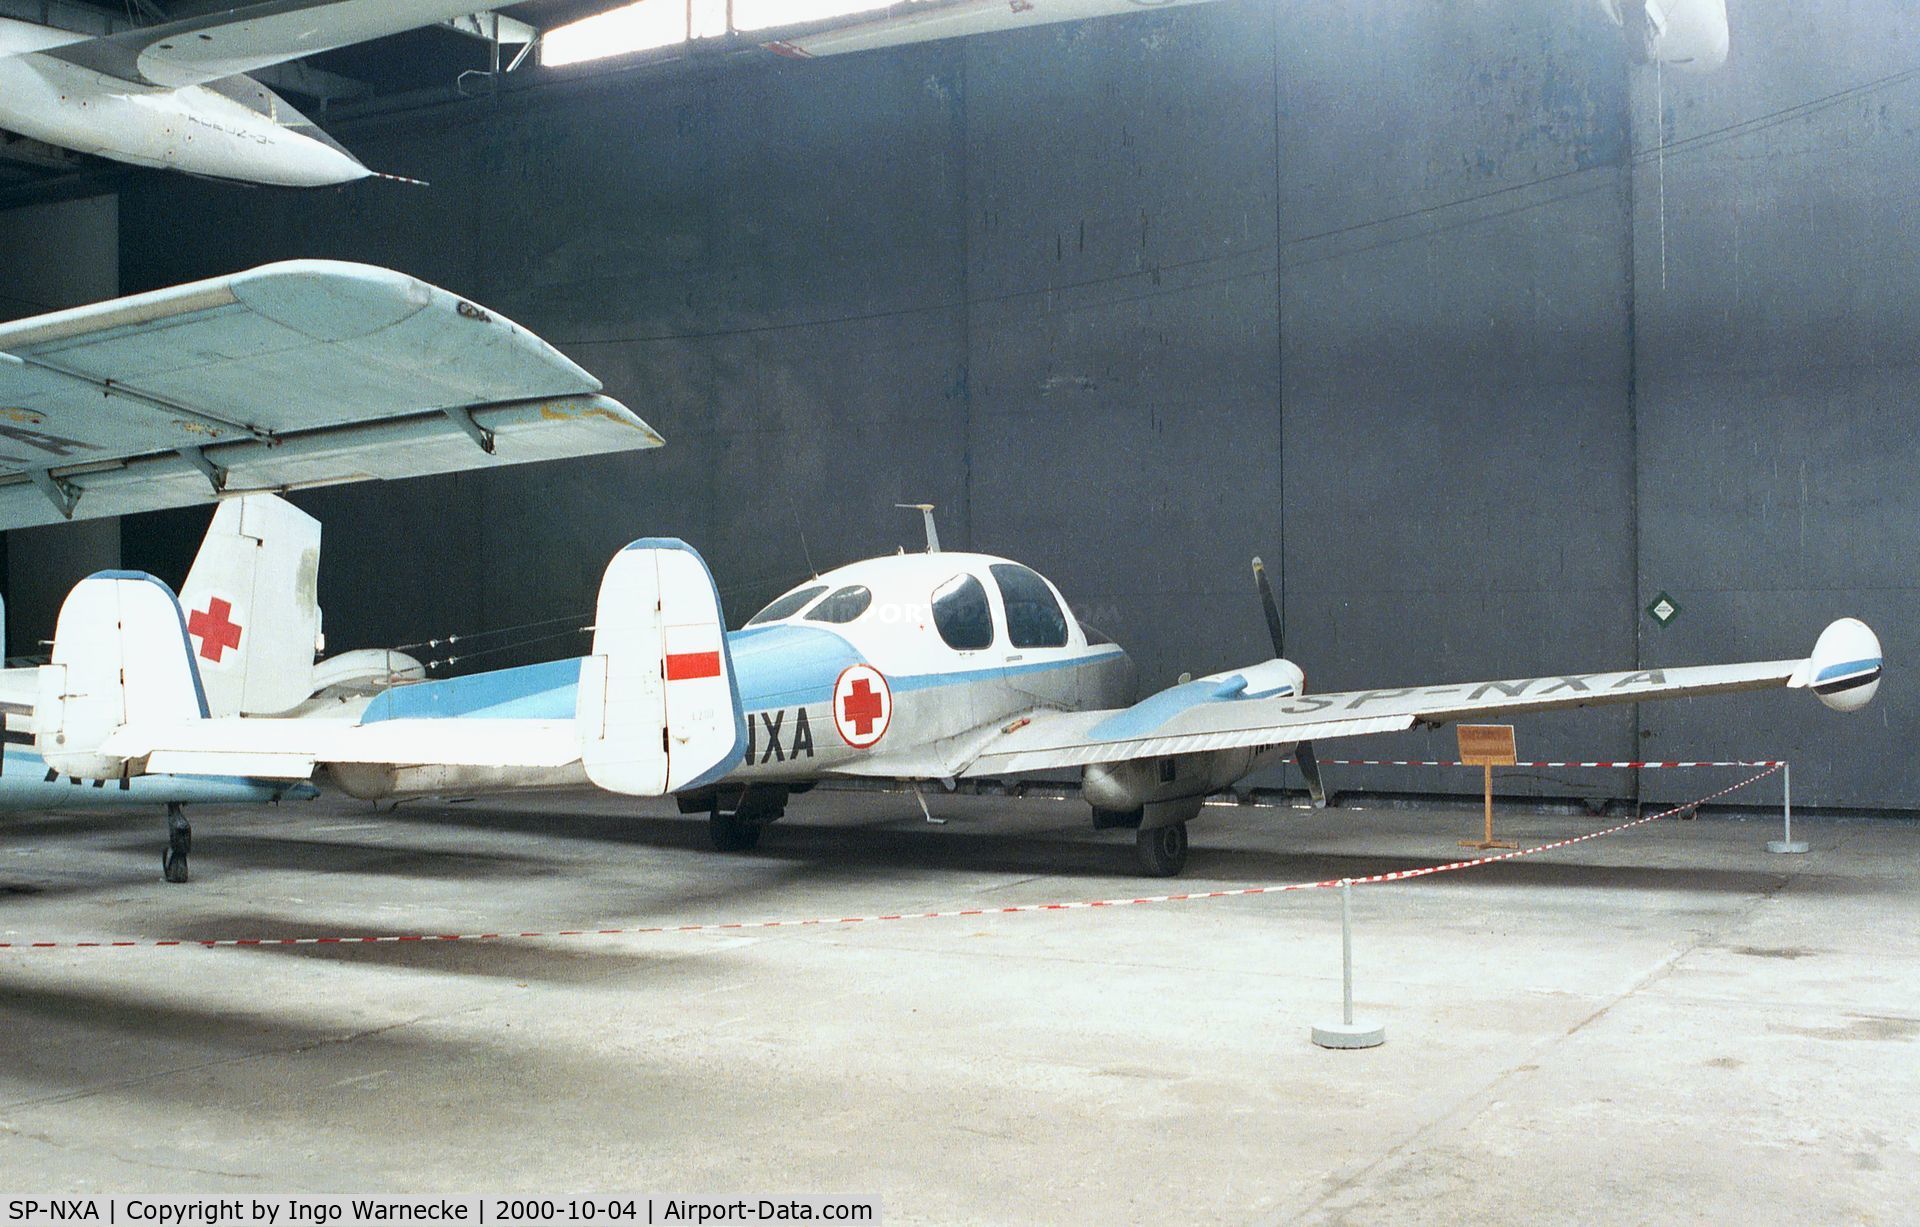 SP-NXA, 1961 Let L-200A Morava C/N 170409, Let L-200D Morava at the Muzeum Lotnictwa i Astronautyki, Krakow